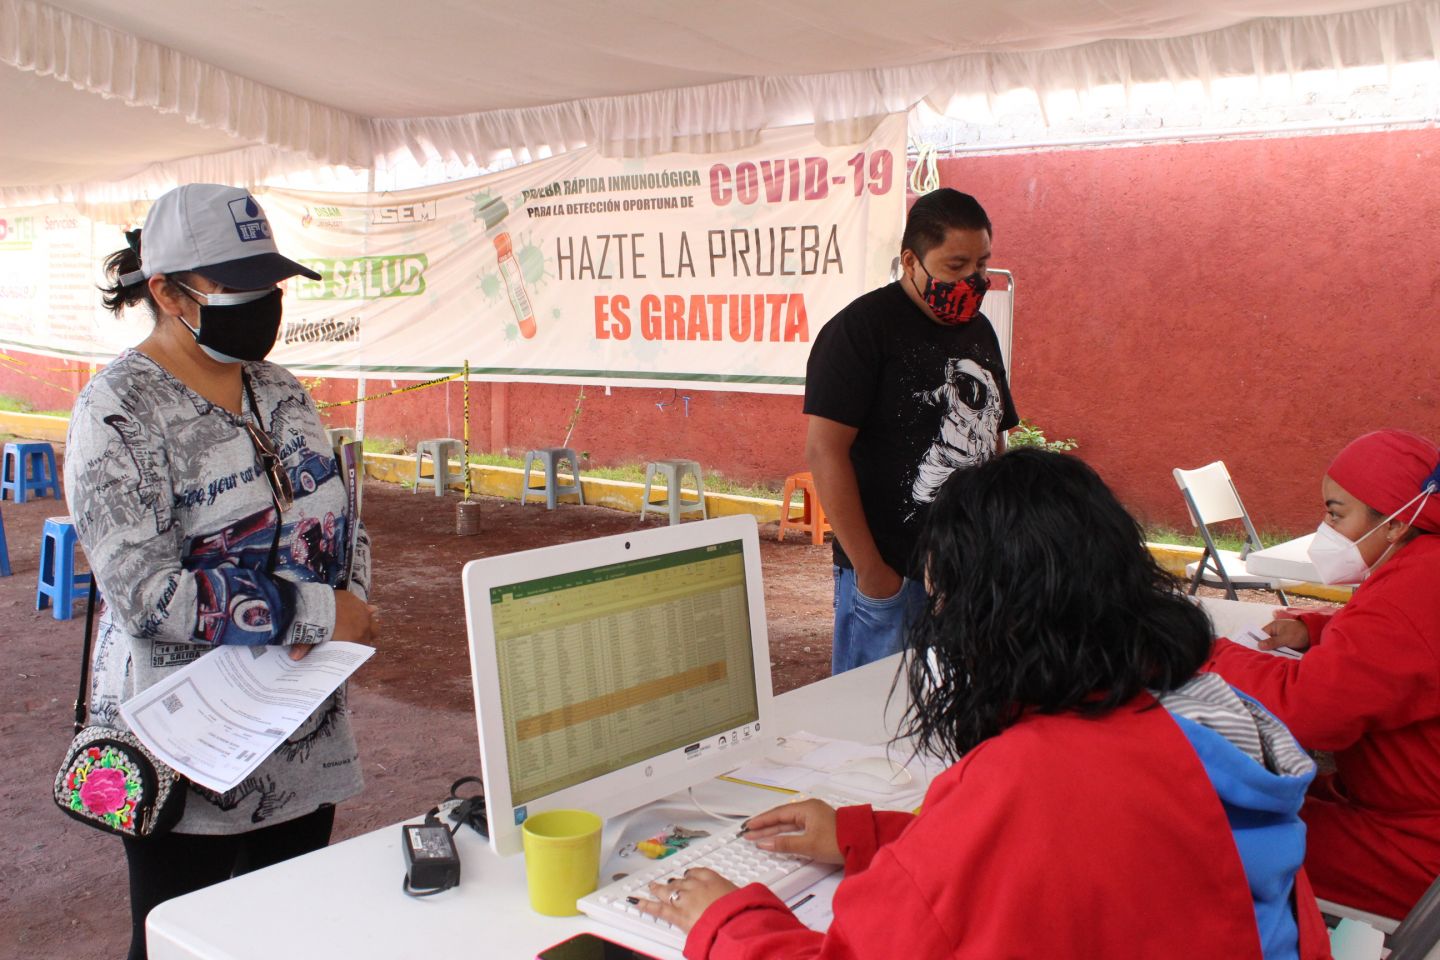 
En Chimalhuacan reforzamos programa de pruebas rápidas gratuitas para detectar COVID-19
